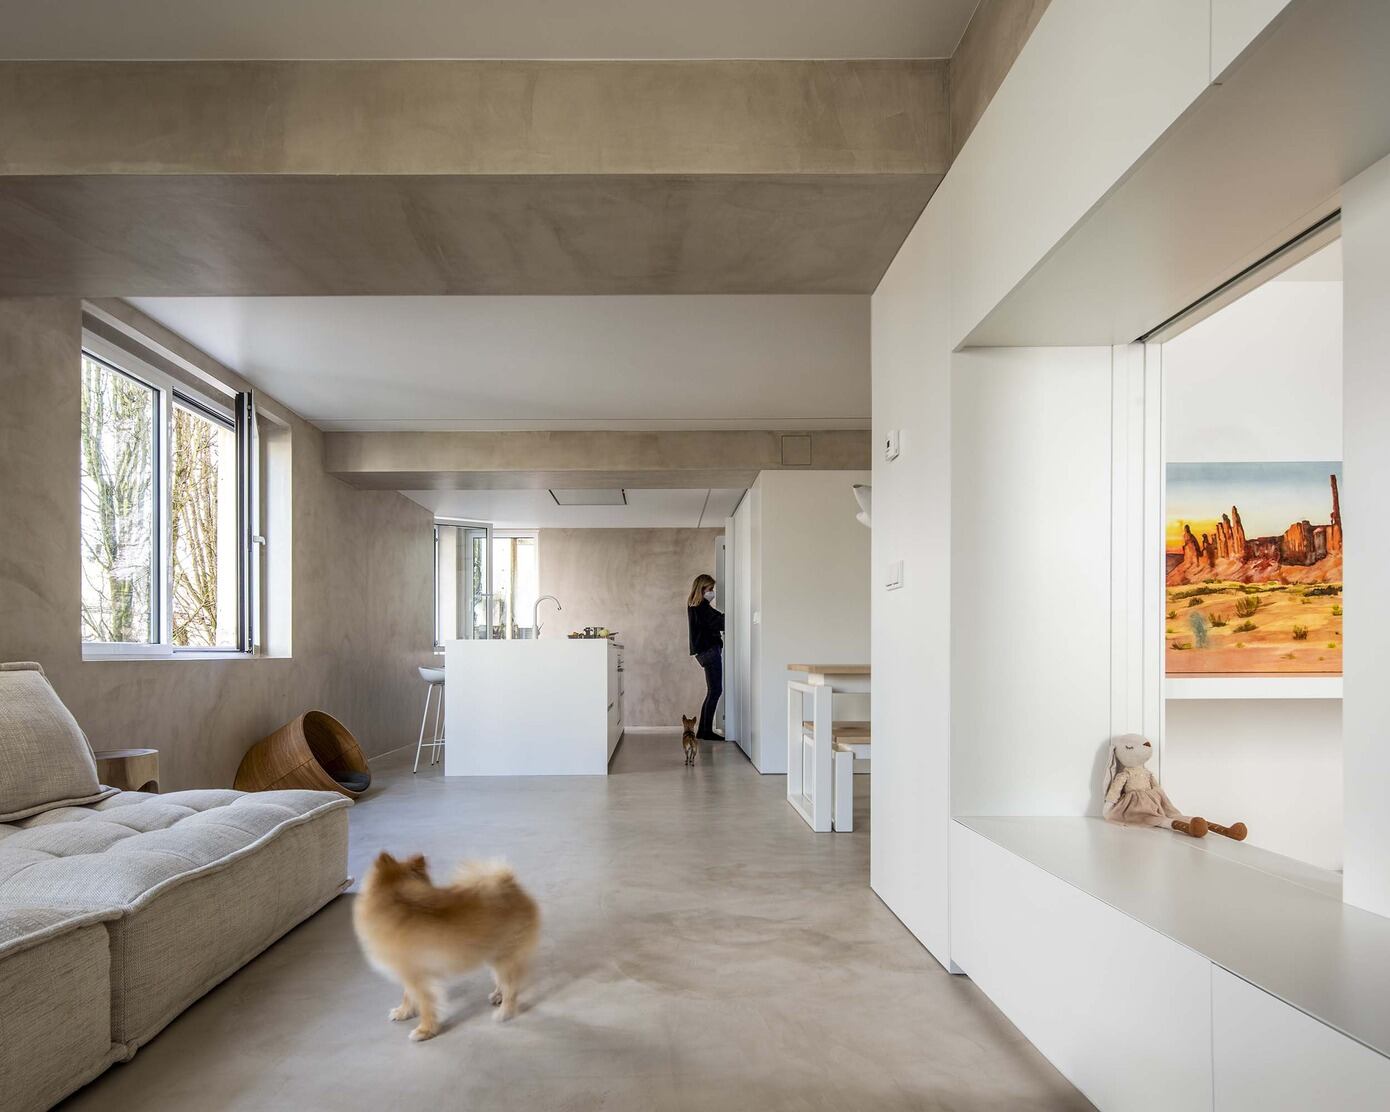 NIDO House by 2es+_oficina de arquitectura | HomeAdore